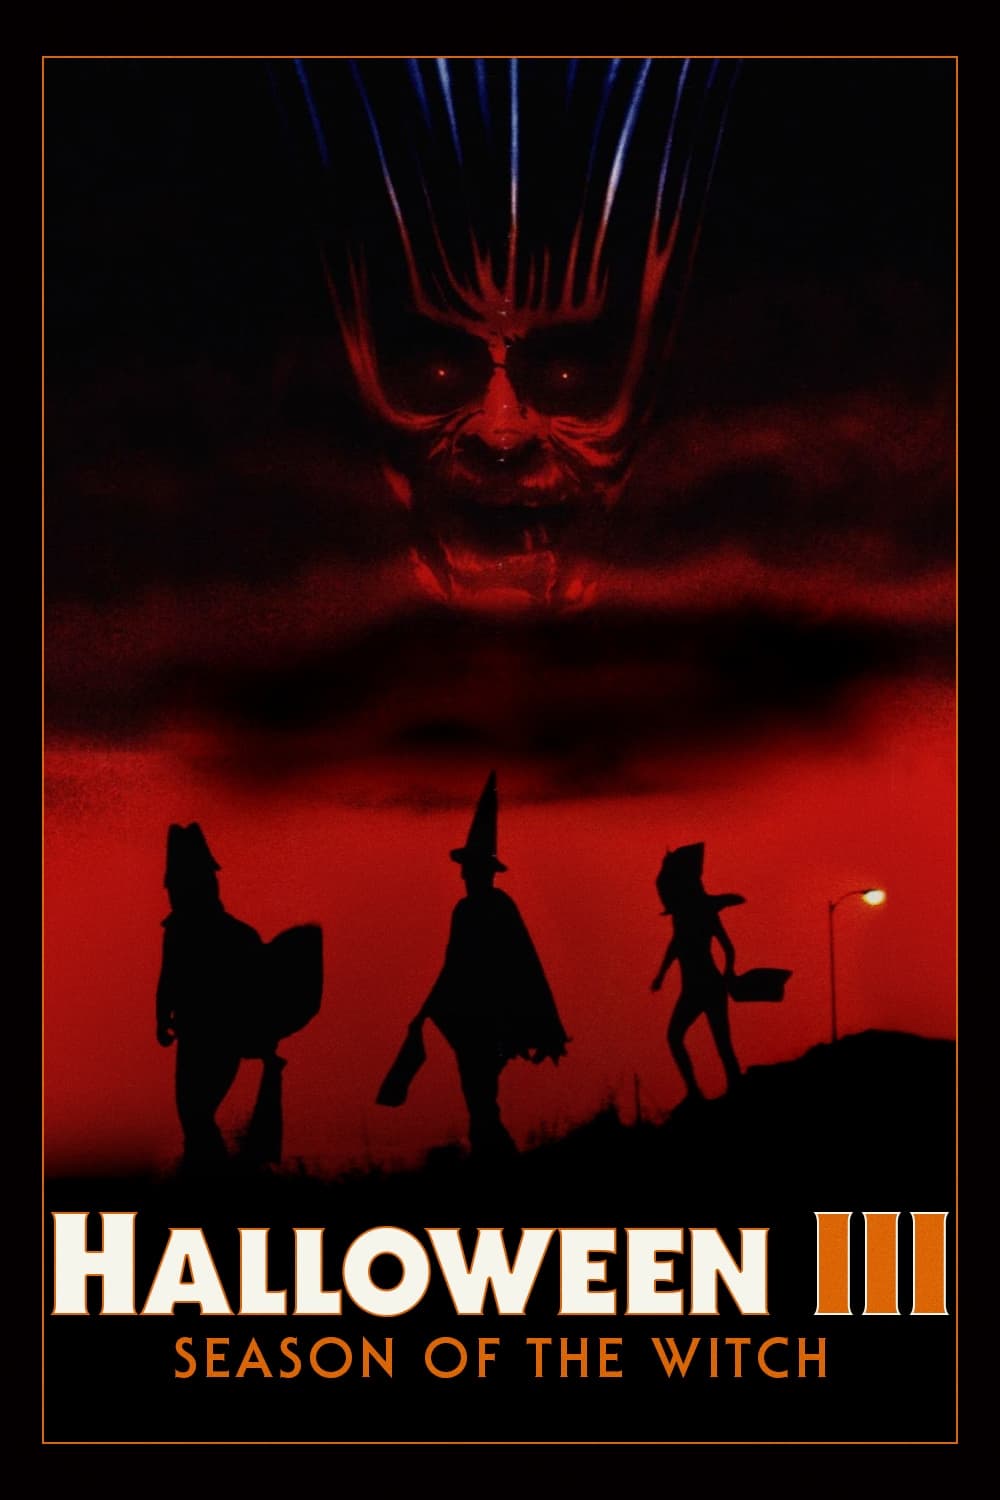 Halloween III - Die Nacht der Entscheidung (1982)